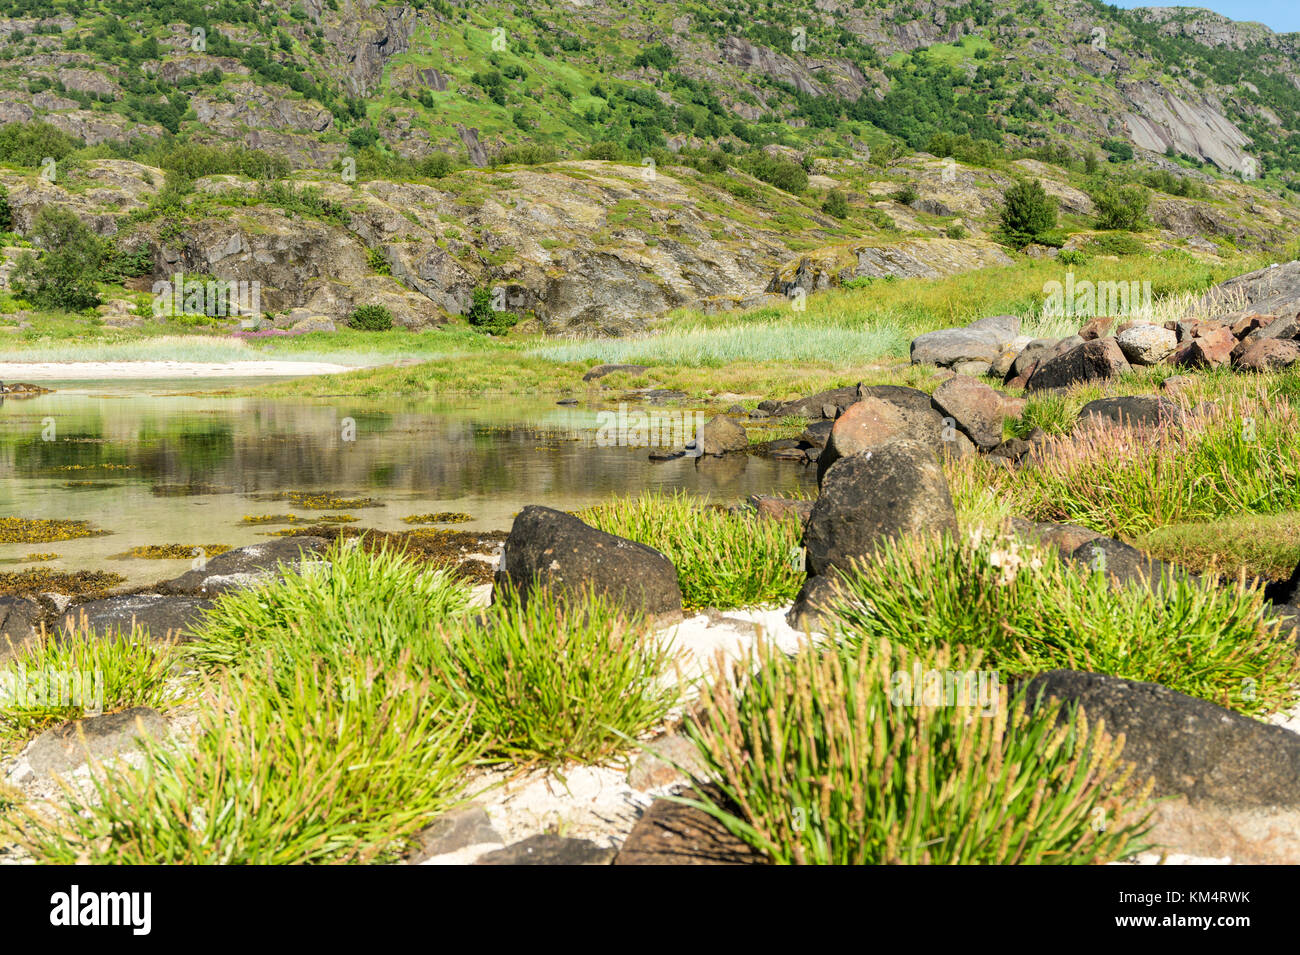 Le acque turchesi della baia, le pietre e la verde erba in estate, arcipelago delle Lofoten, Norvegia Foto Stock